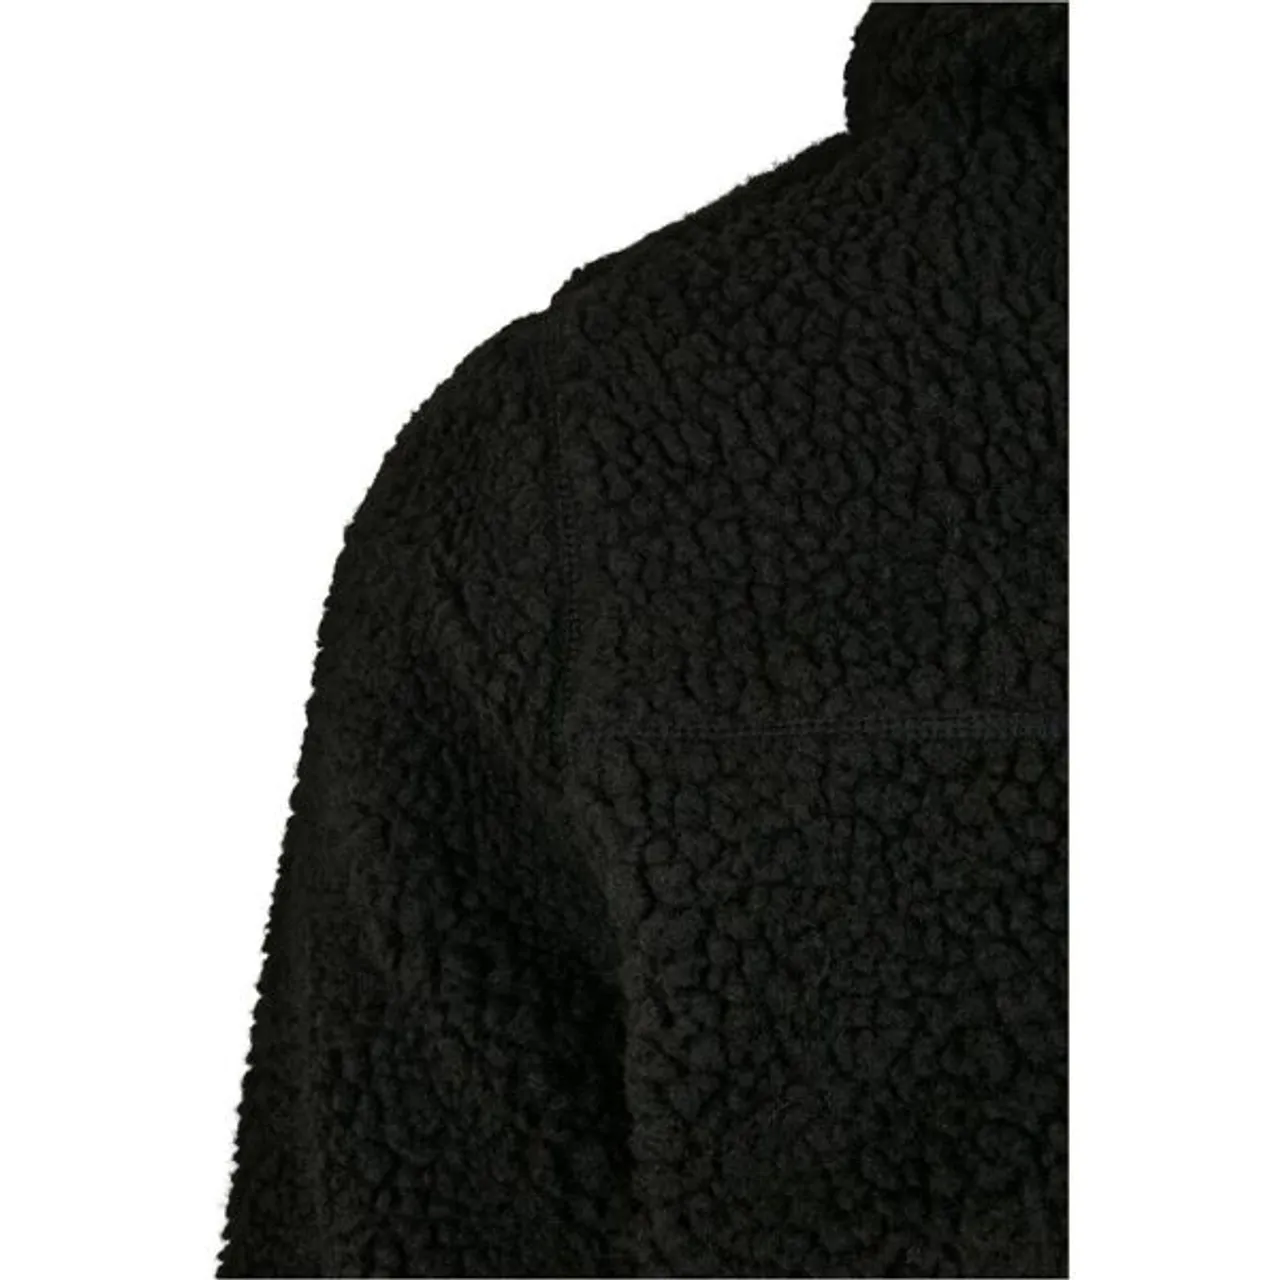 Anorak BRANDIT "Brandit Herren Teddyfleece Worker Pullover" Gr. 6XL, schwarz (black) Herren Jacken Regenjacken